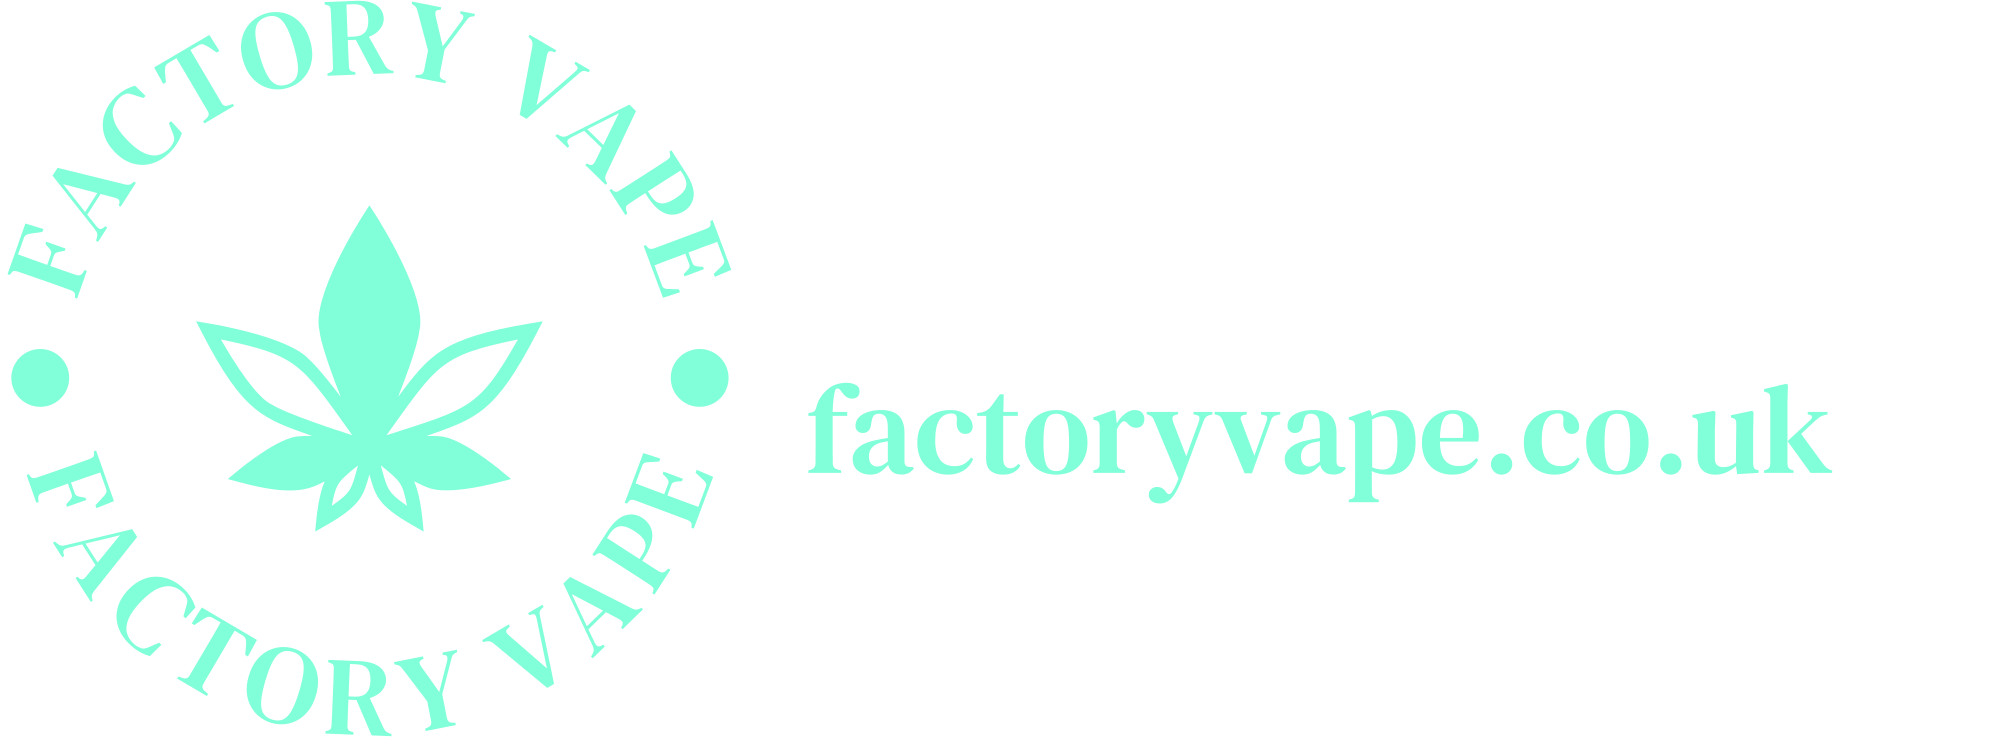 factoryvape